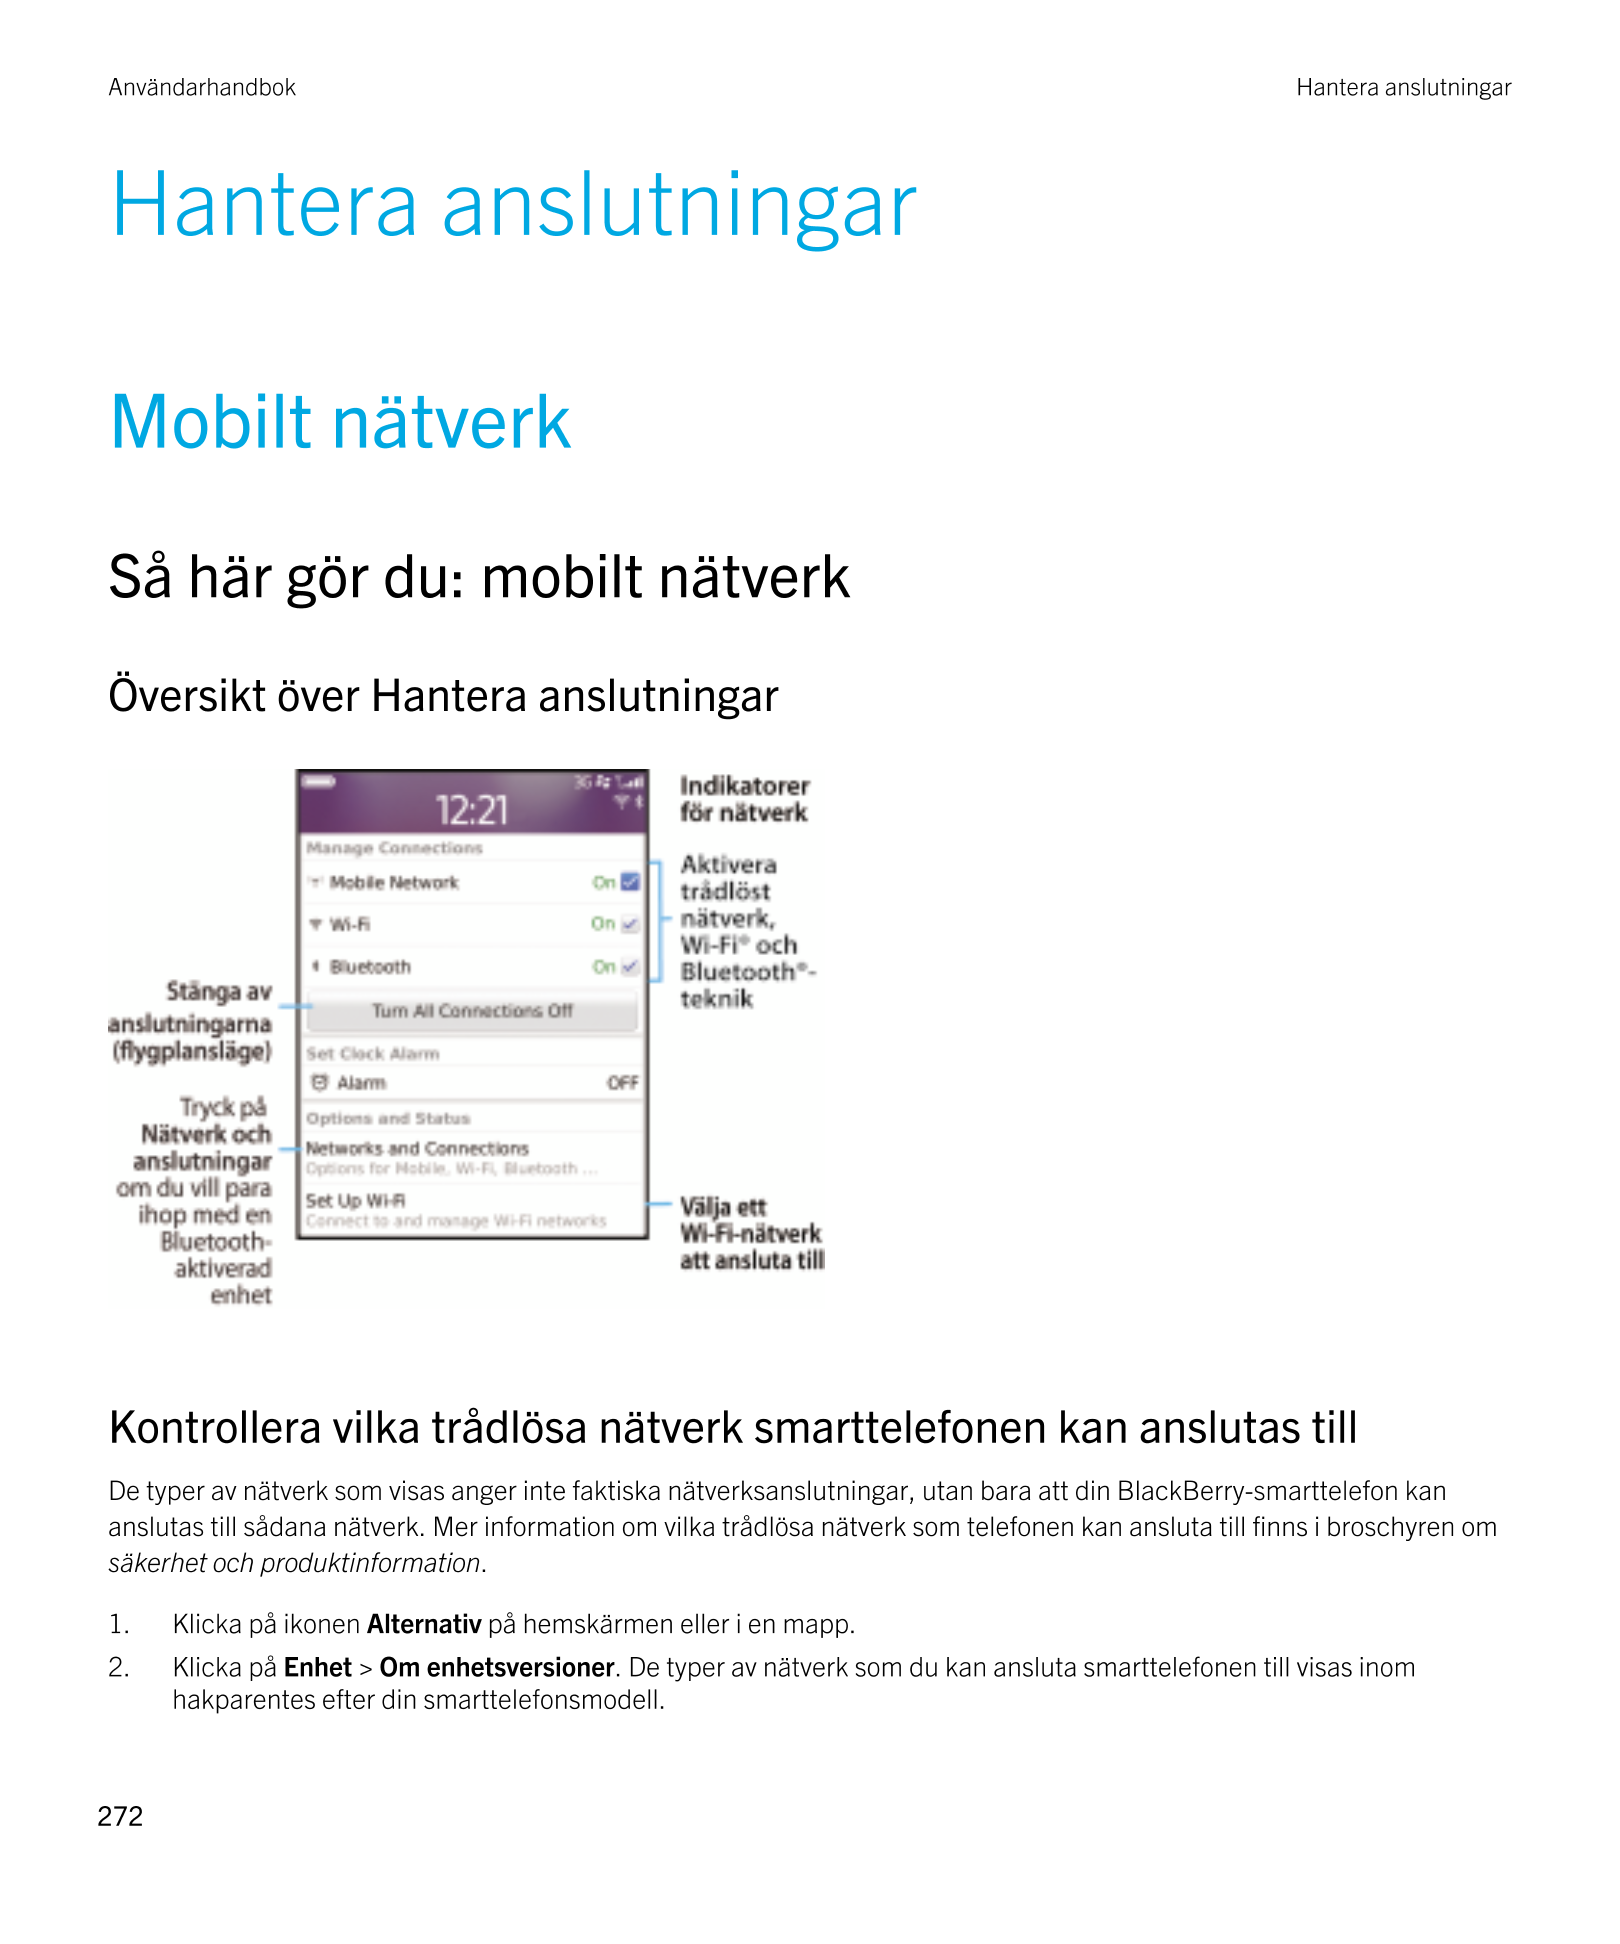 Användarhandbok Hantera anslutningar
Hantera anslutningar
Mobilt nätverk
Så här gör du: mobilt nätverk
Översikt över Hantera ans